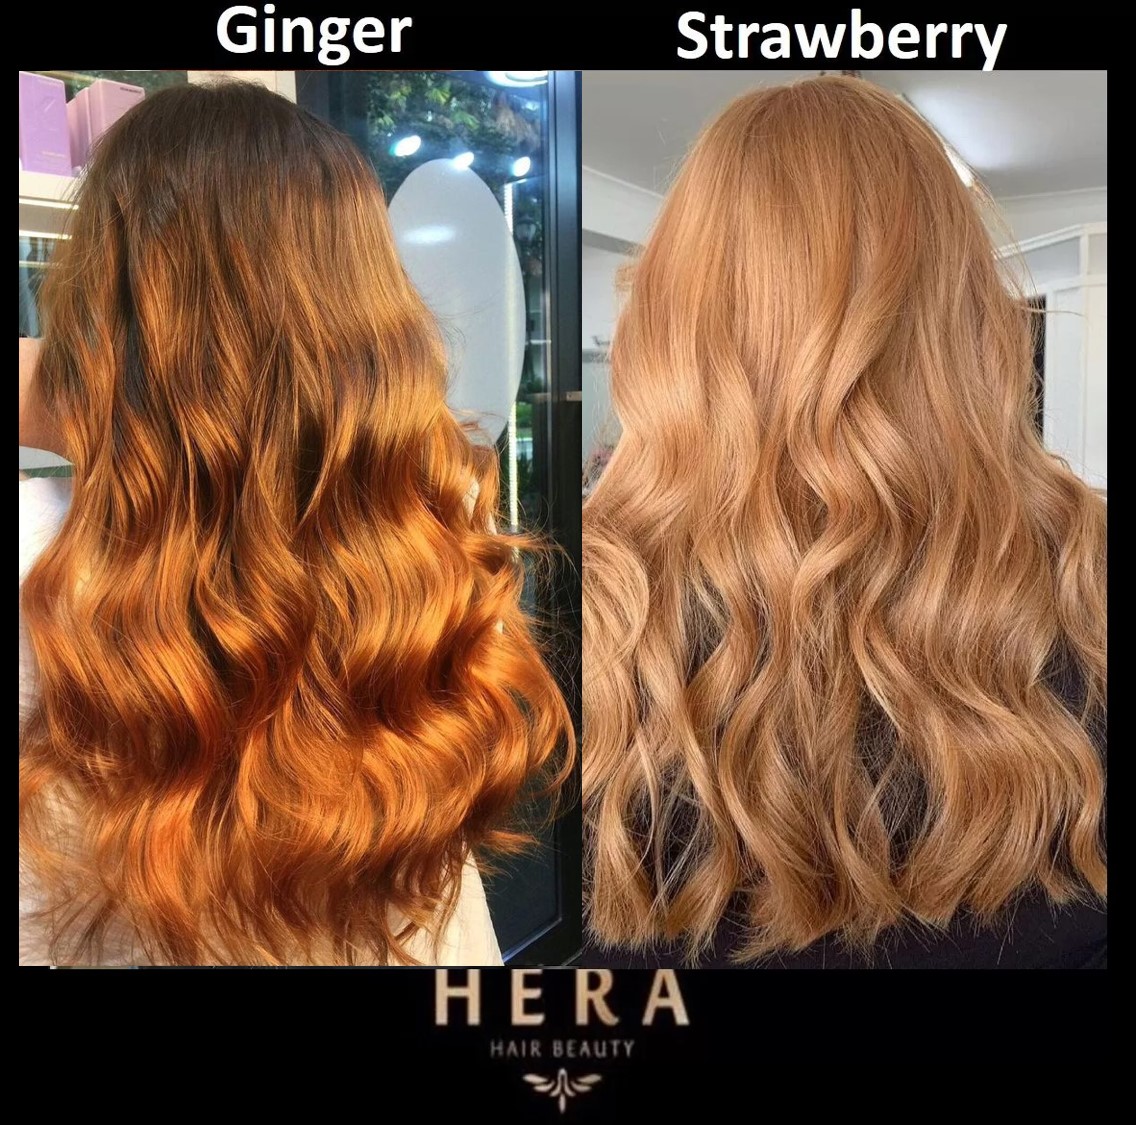 Strawberry vs. Ginger Hair | Hera Hair